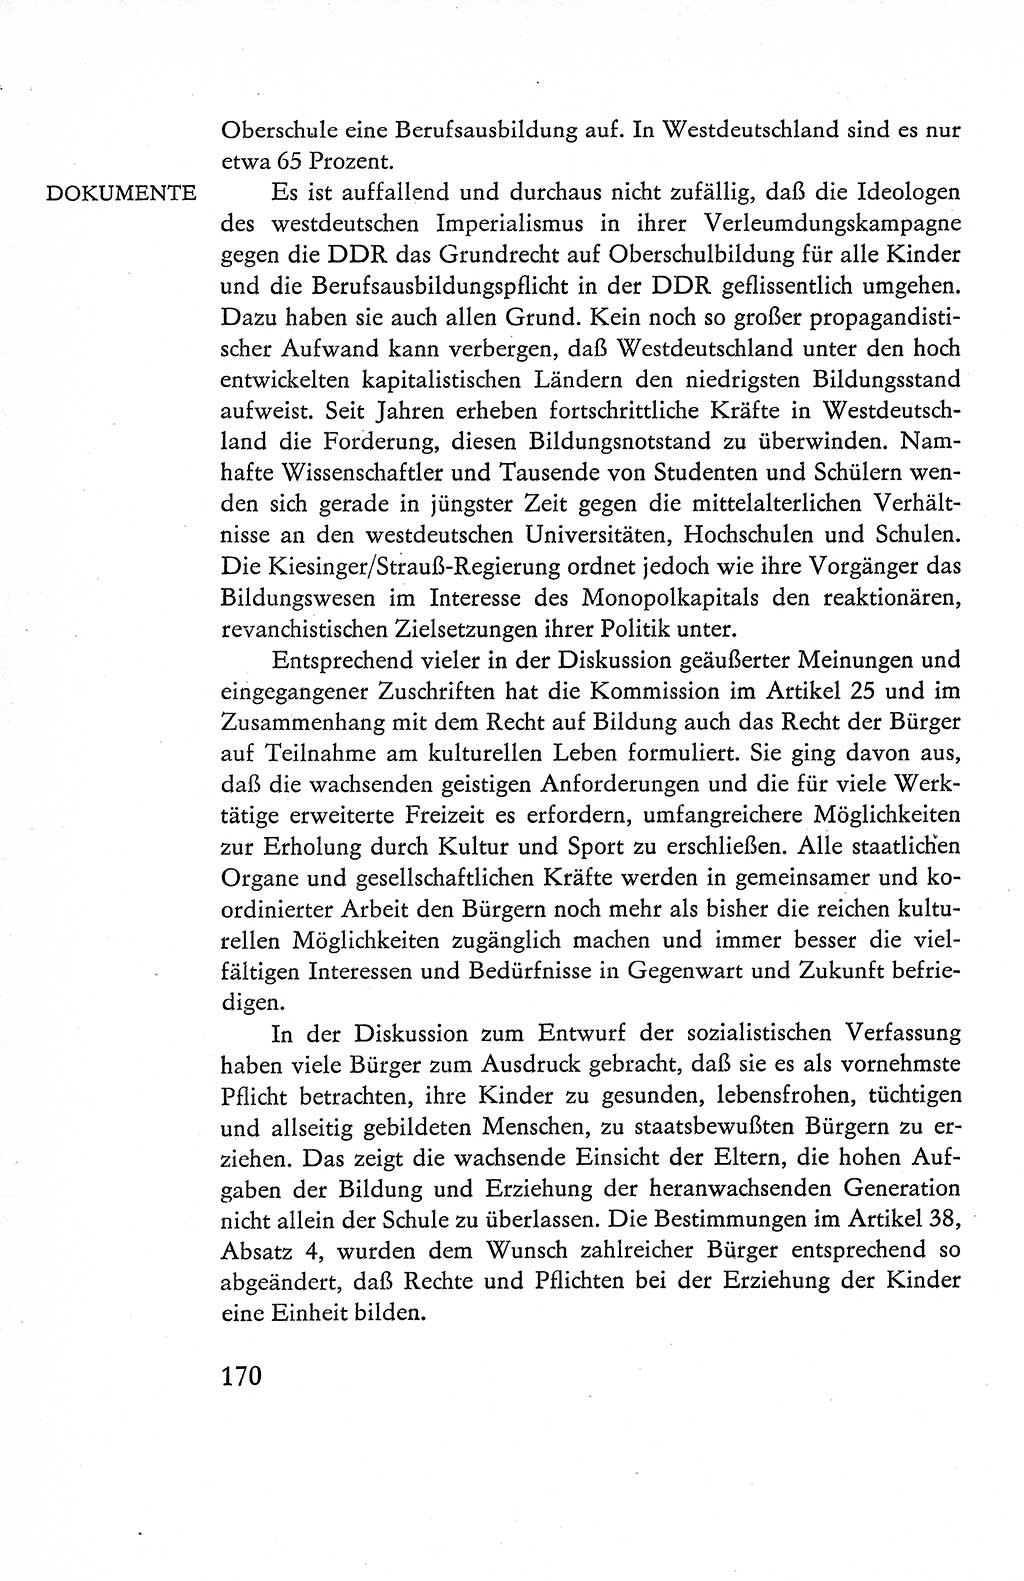 Verfassung der Deutschen Demokratischen Republik (DDR), Dokumente, Kommentar 1969, Band 1, Seite 170 (Verf. DDR Dok. Komm. 1969, Bd. 1, S. 170)